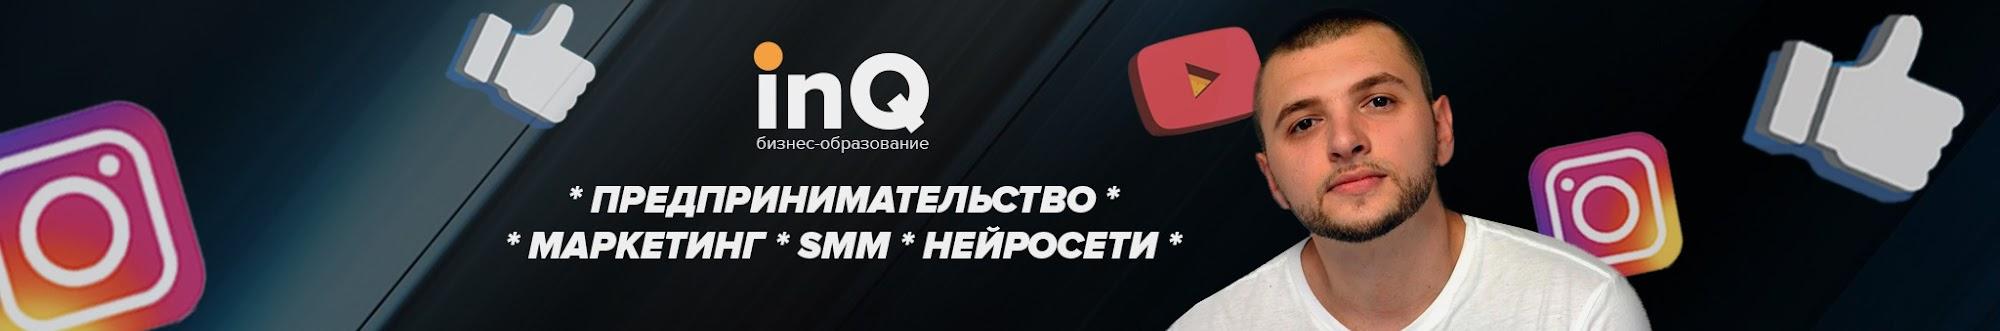 InQ: бизнес, SMM, нейросети | Валерий Громык